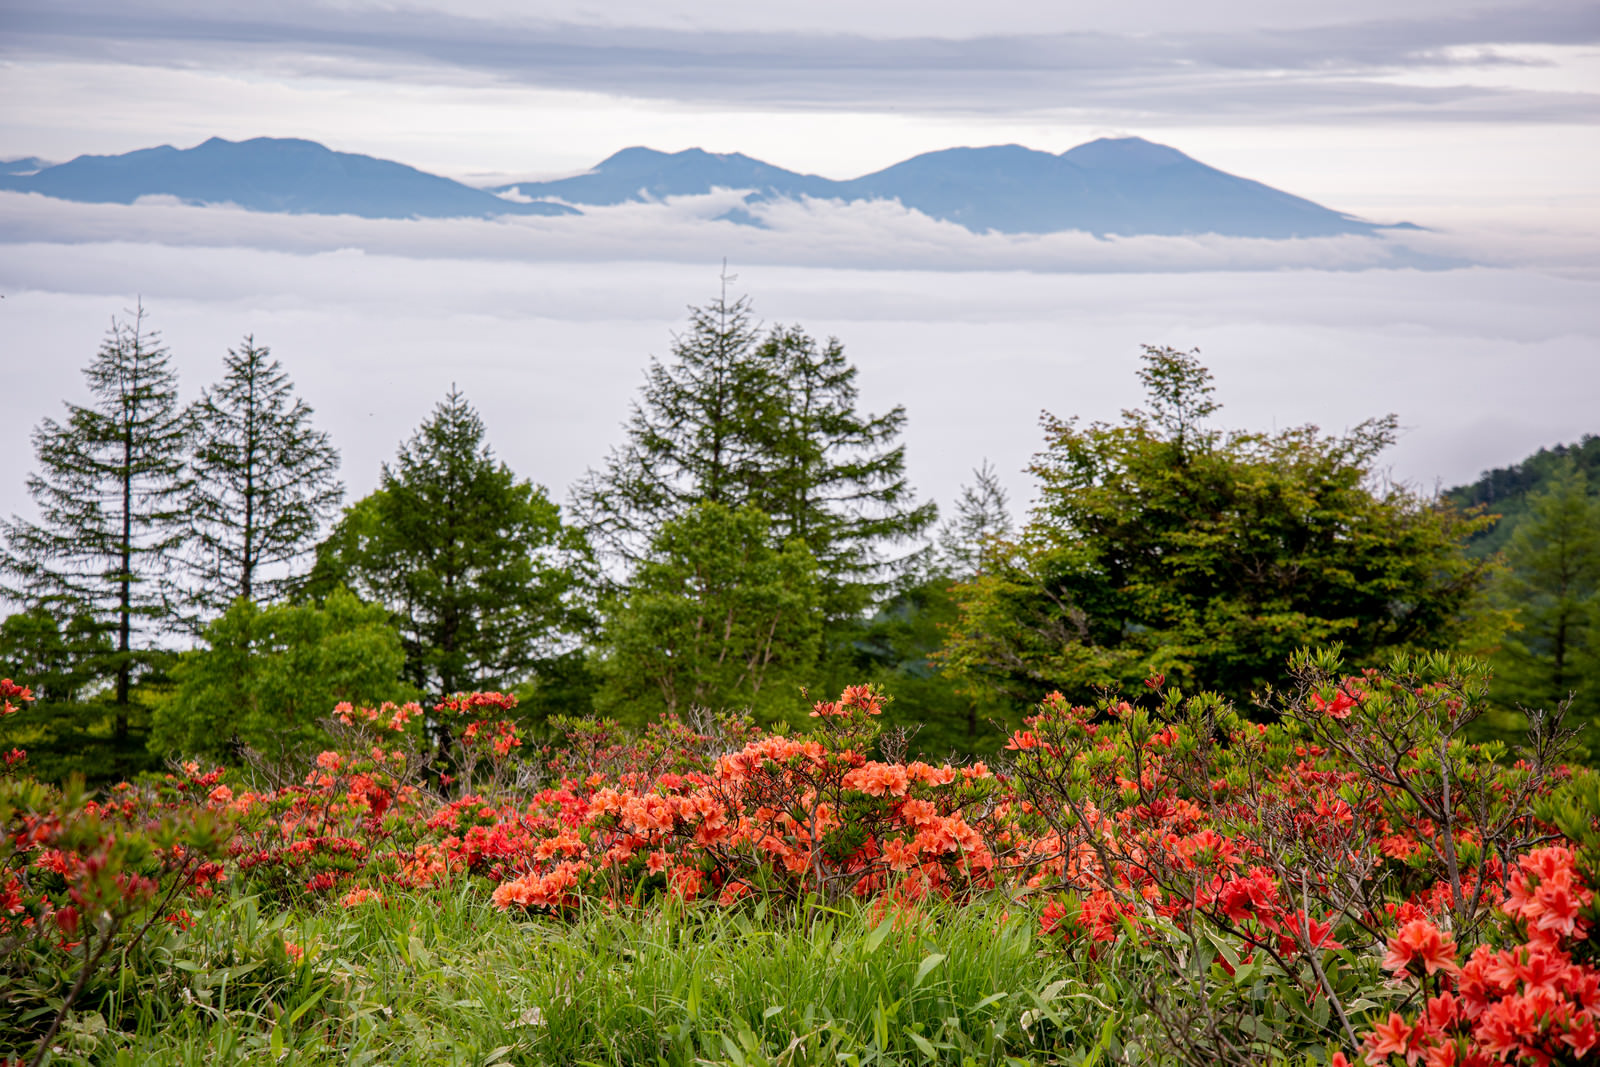 「美ヶ原のレンゲツツジと雲海 | フリー素材のぱくたそ」の写真